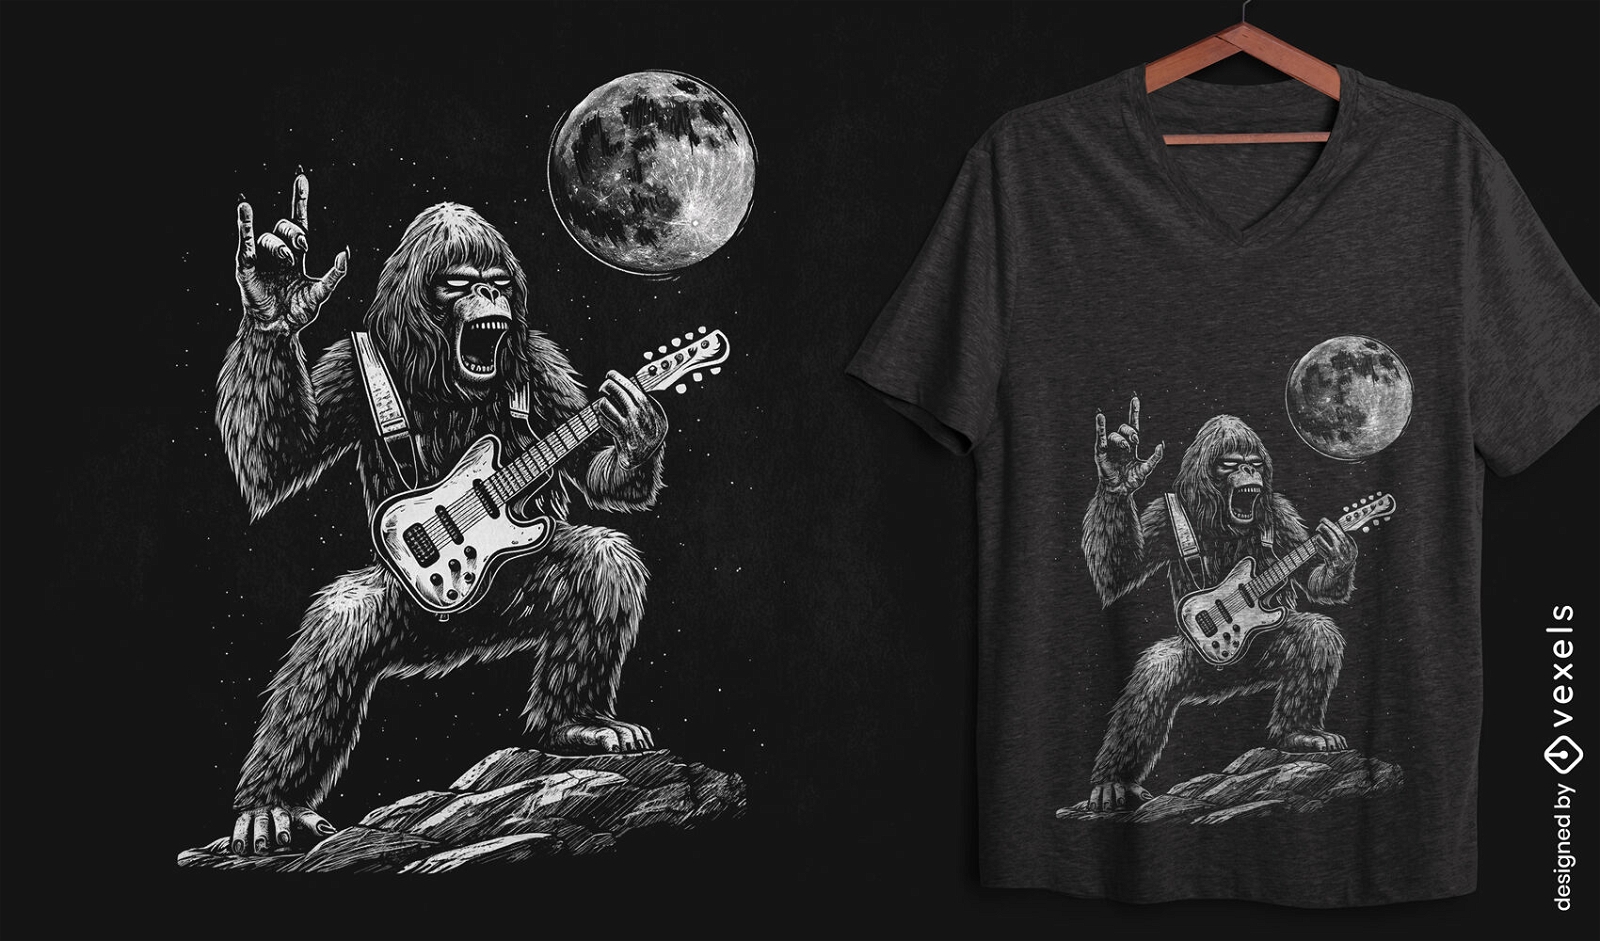 Dise?o de camiseta del concierto Moonlight Bigfoot.